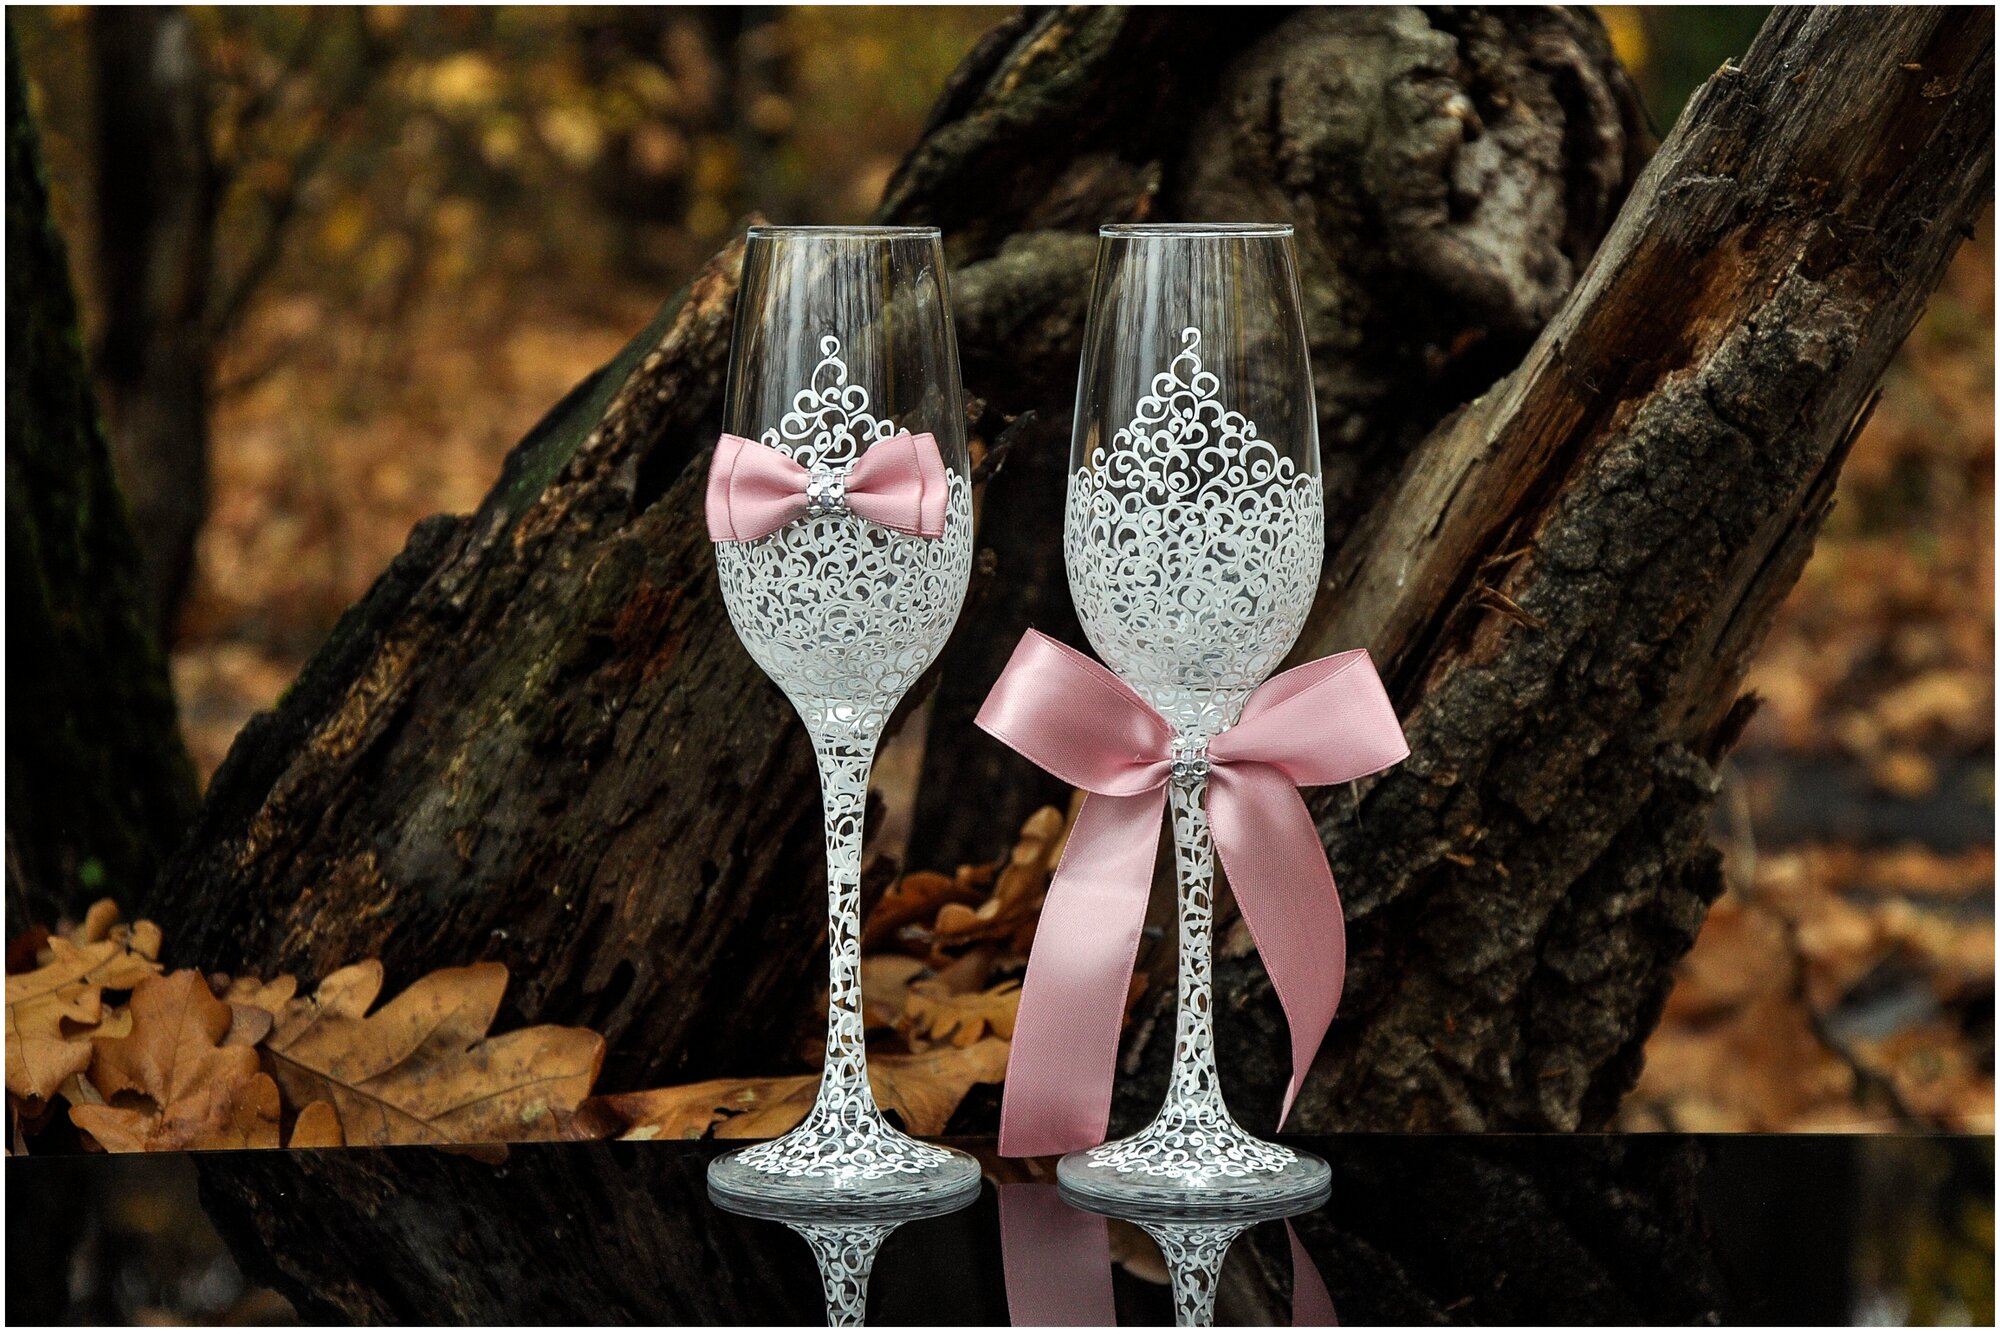 Свадебные бокалы "Горько" для жениха и невесты на свадьбу с ажурной белой росписью и бантами цвета пыльной розы